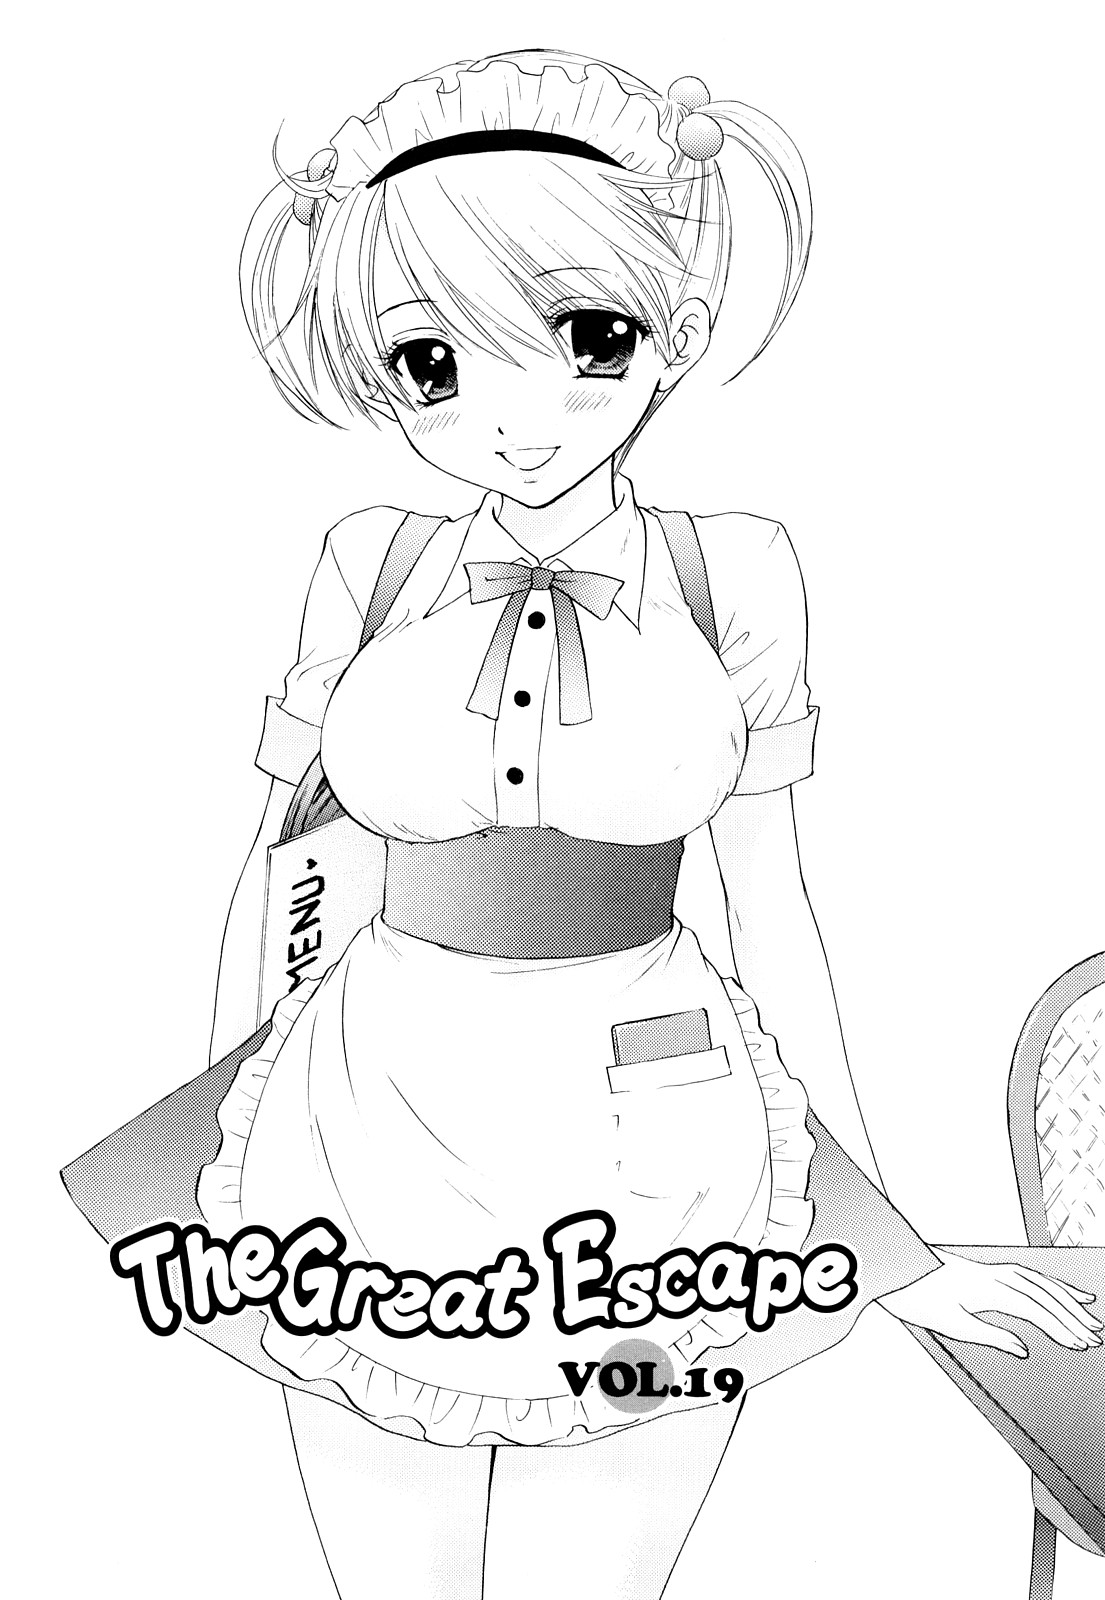 [尾崎未来] The Great Escape 3 初回限定版